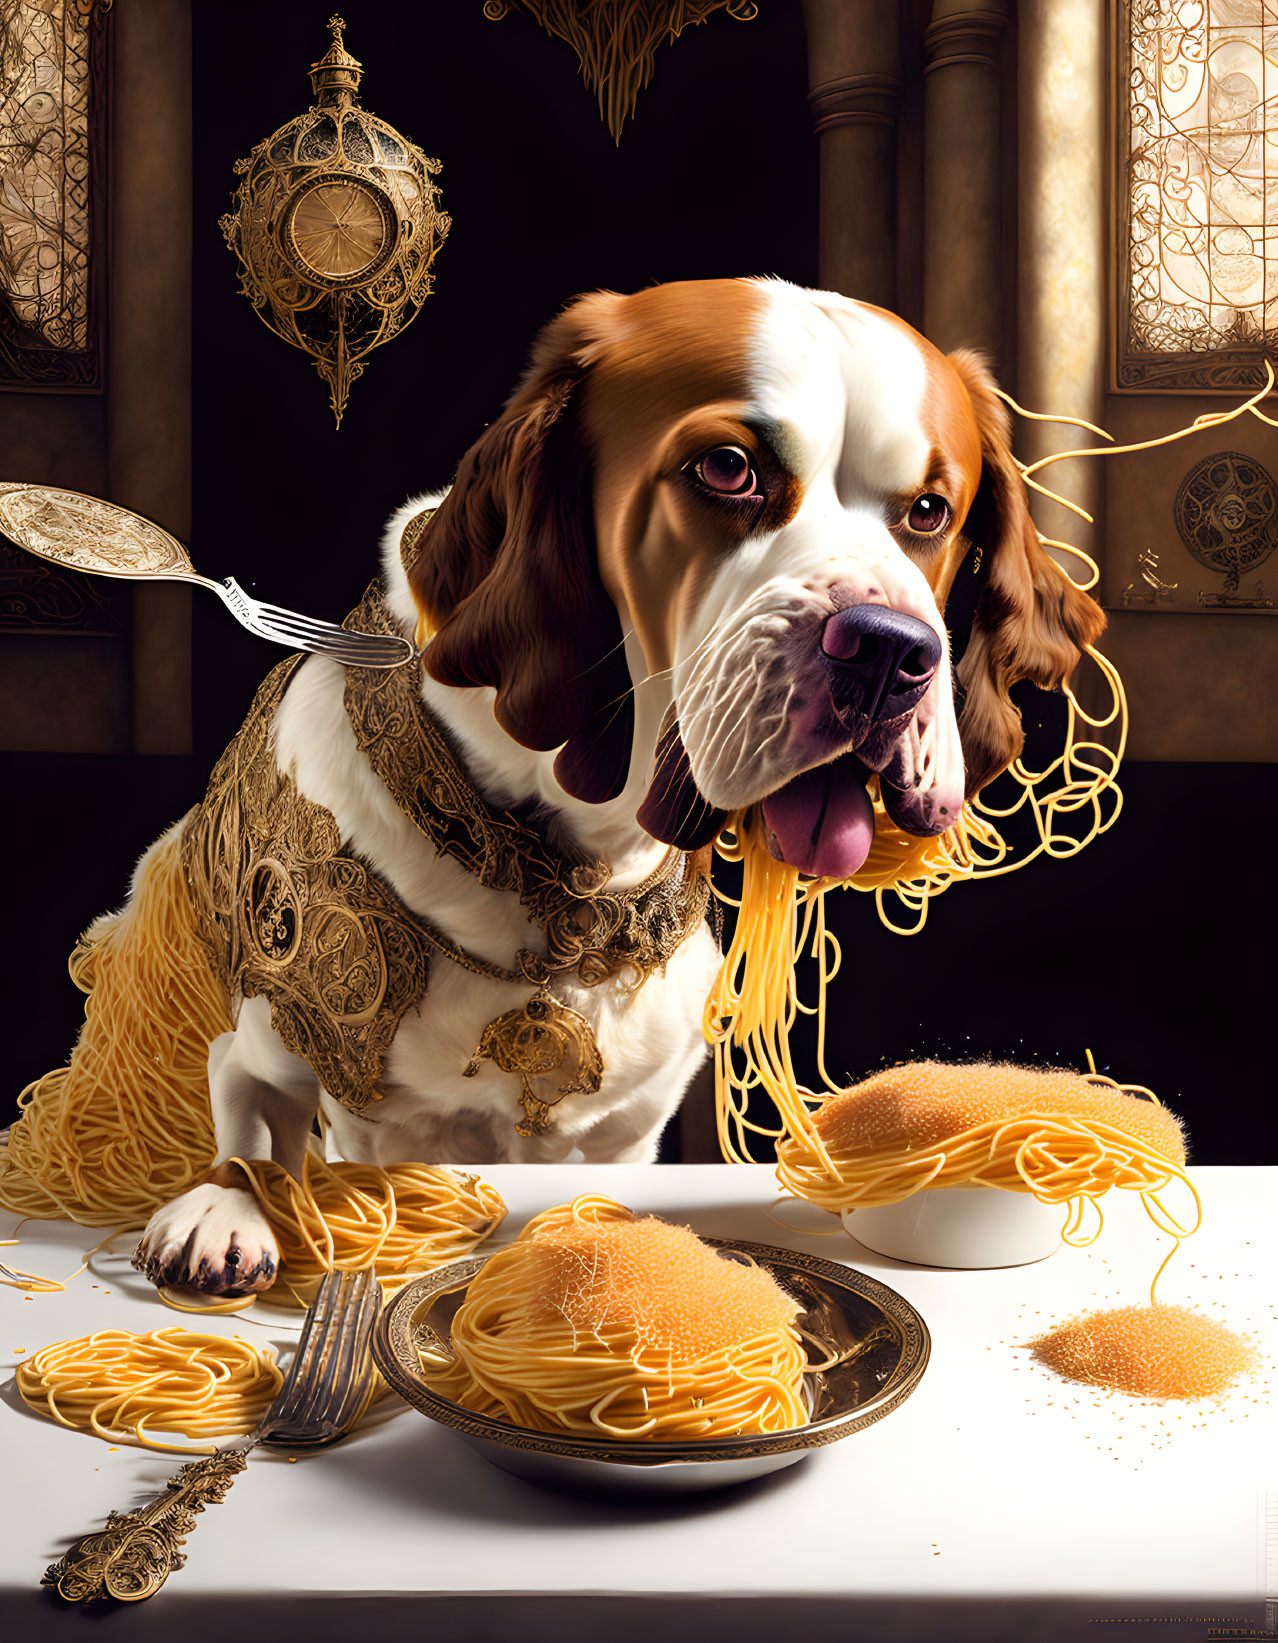 Dog likes spaghetti II